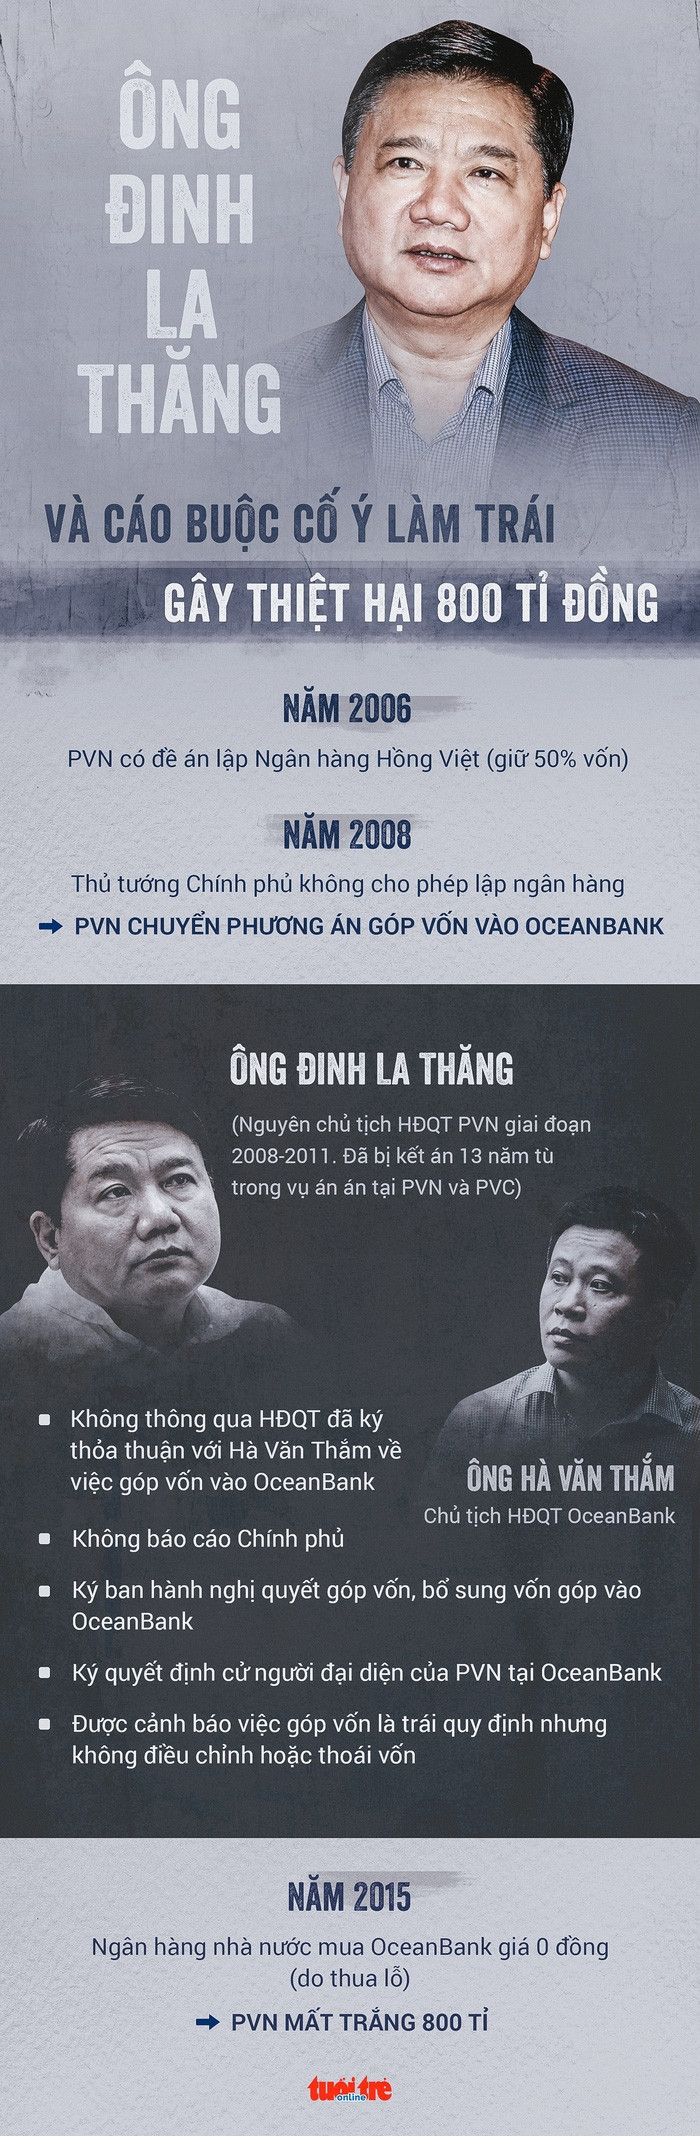 Ông Đinh La Thăng lại ra tòa vụ PVN mất 800 tỉ - Ảnh 3.